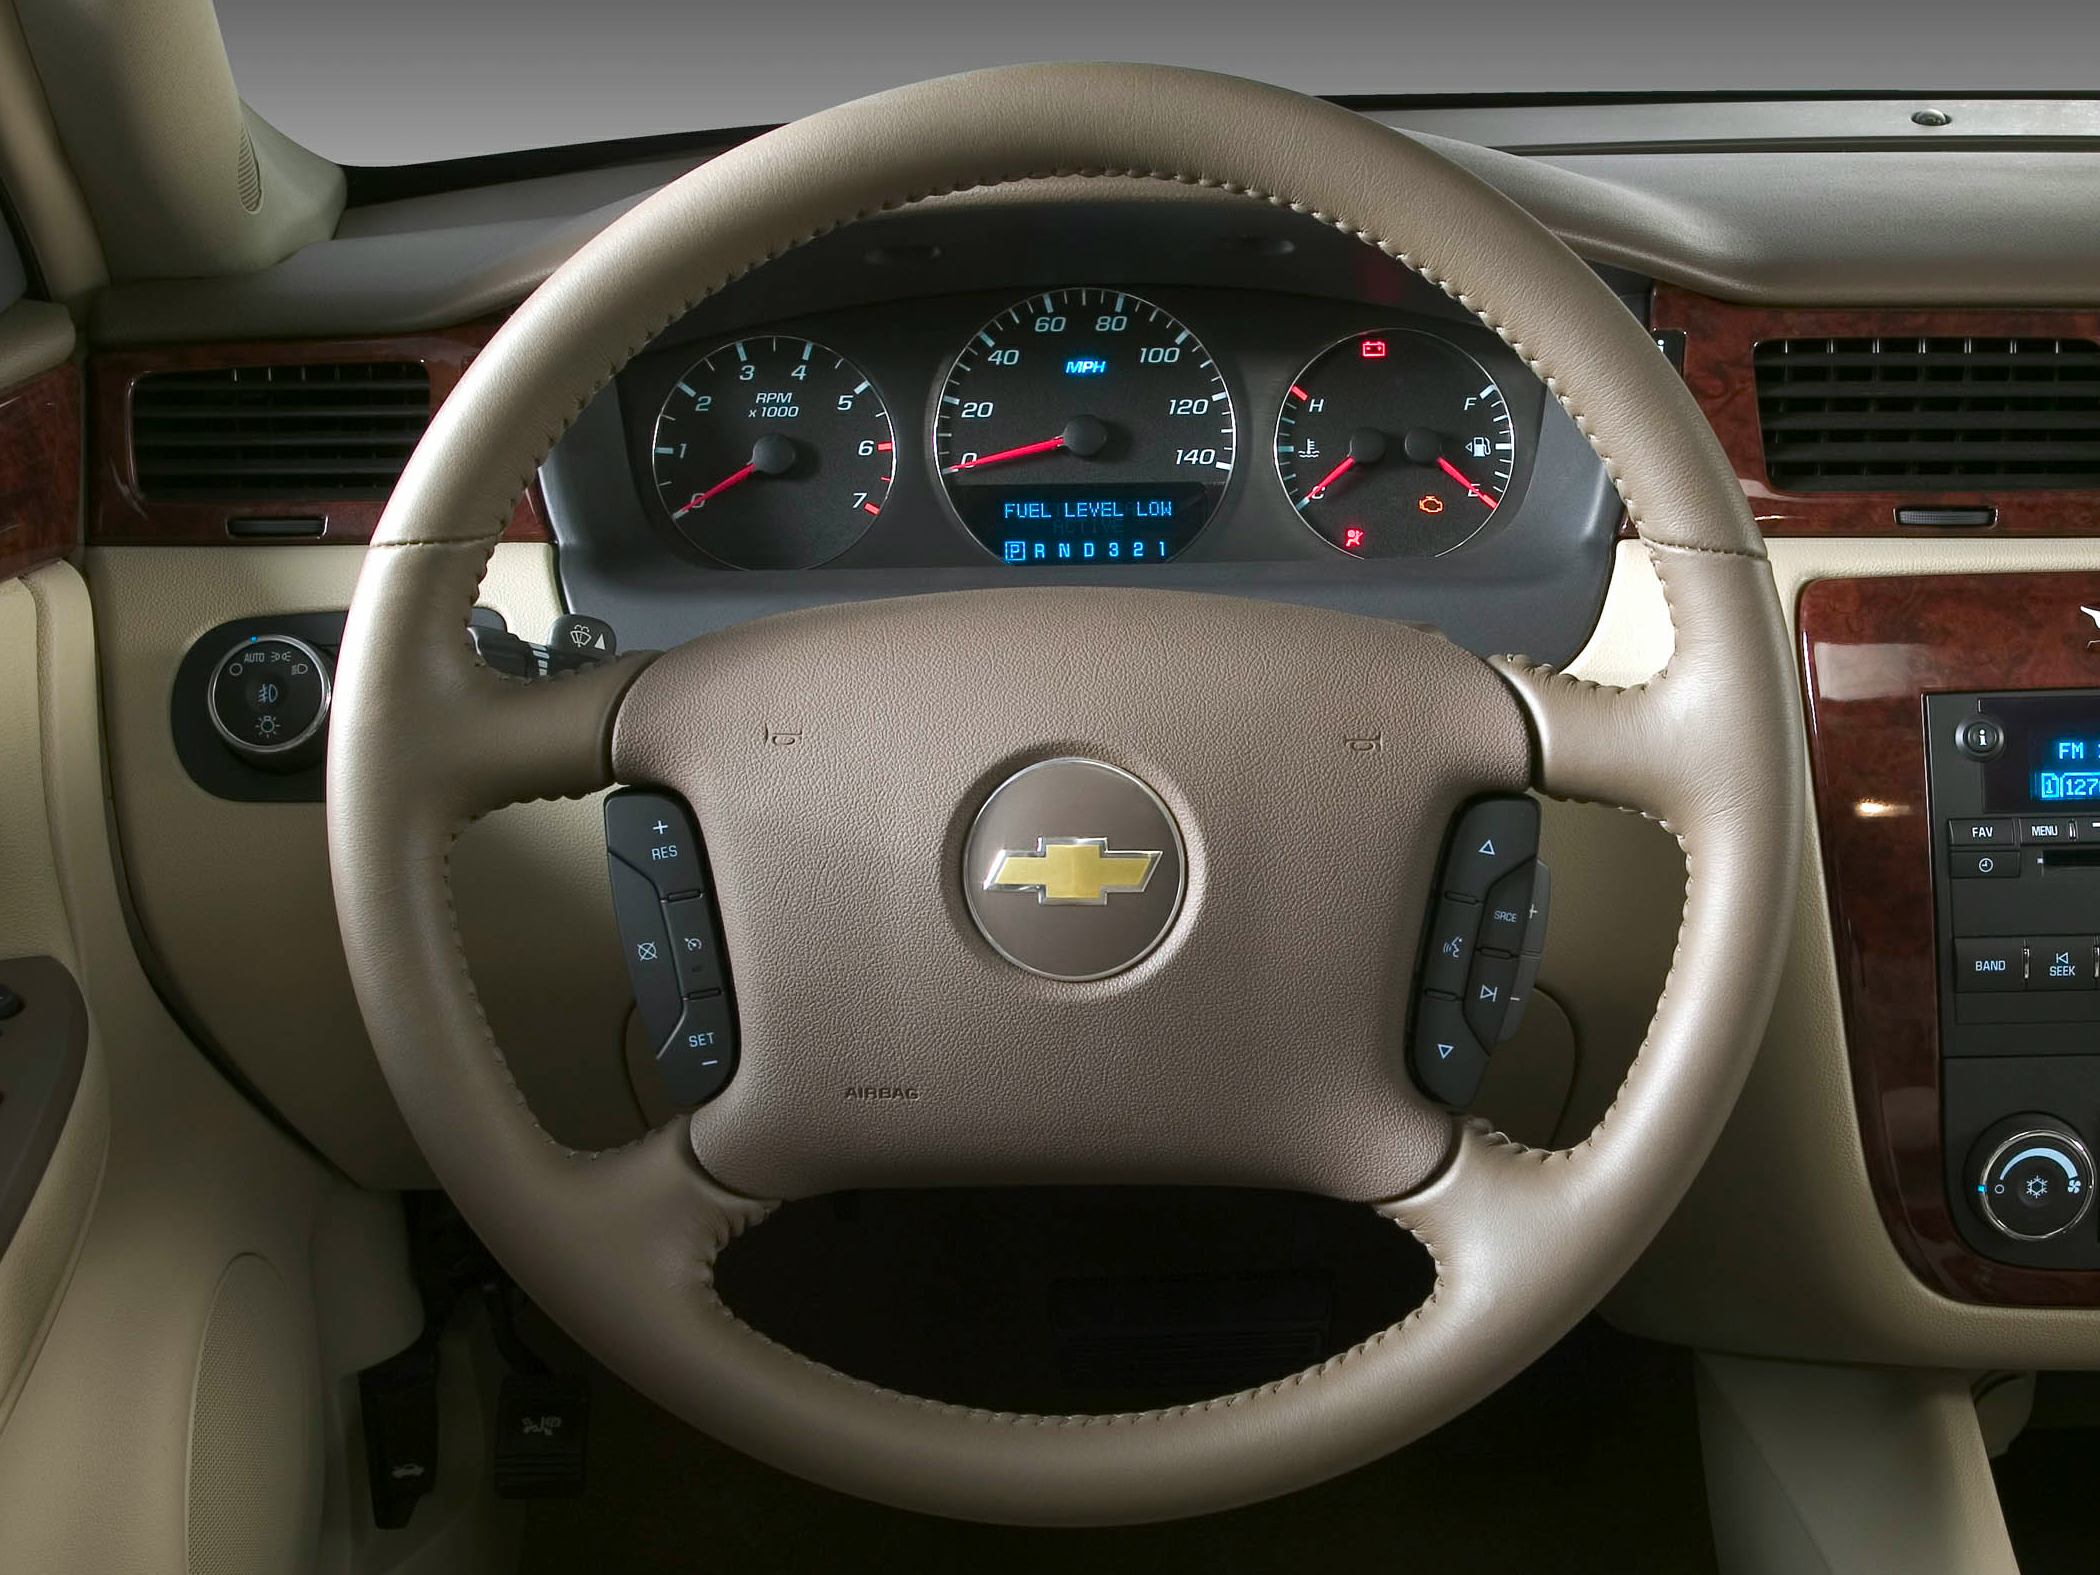 2010 Chevrolet Impala